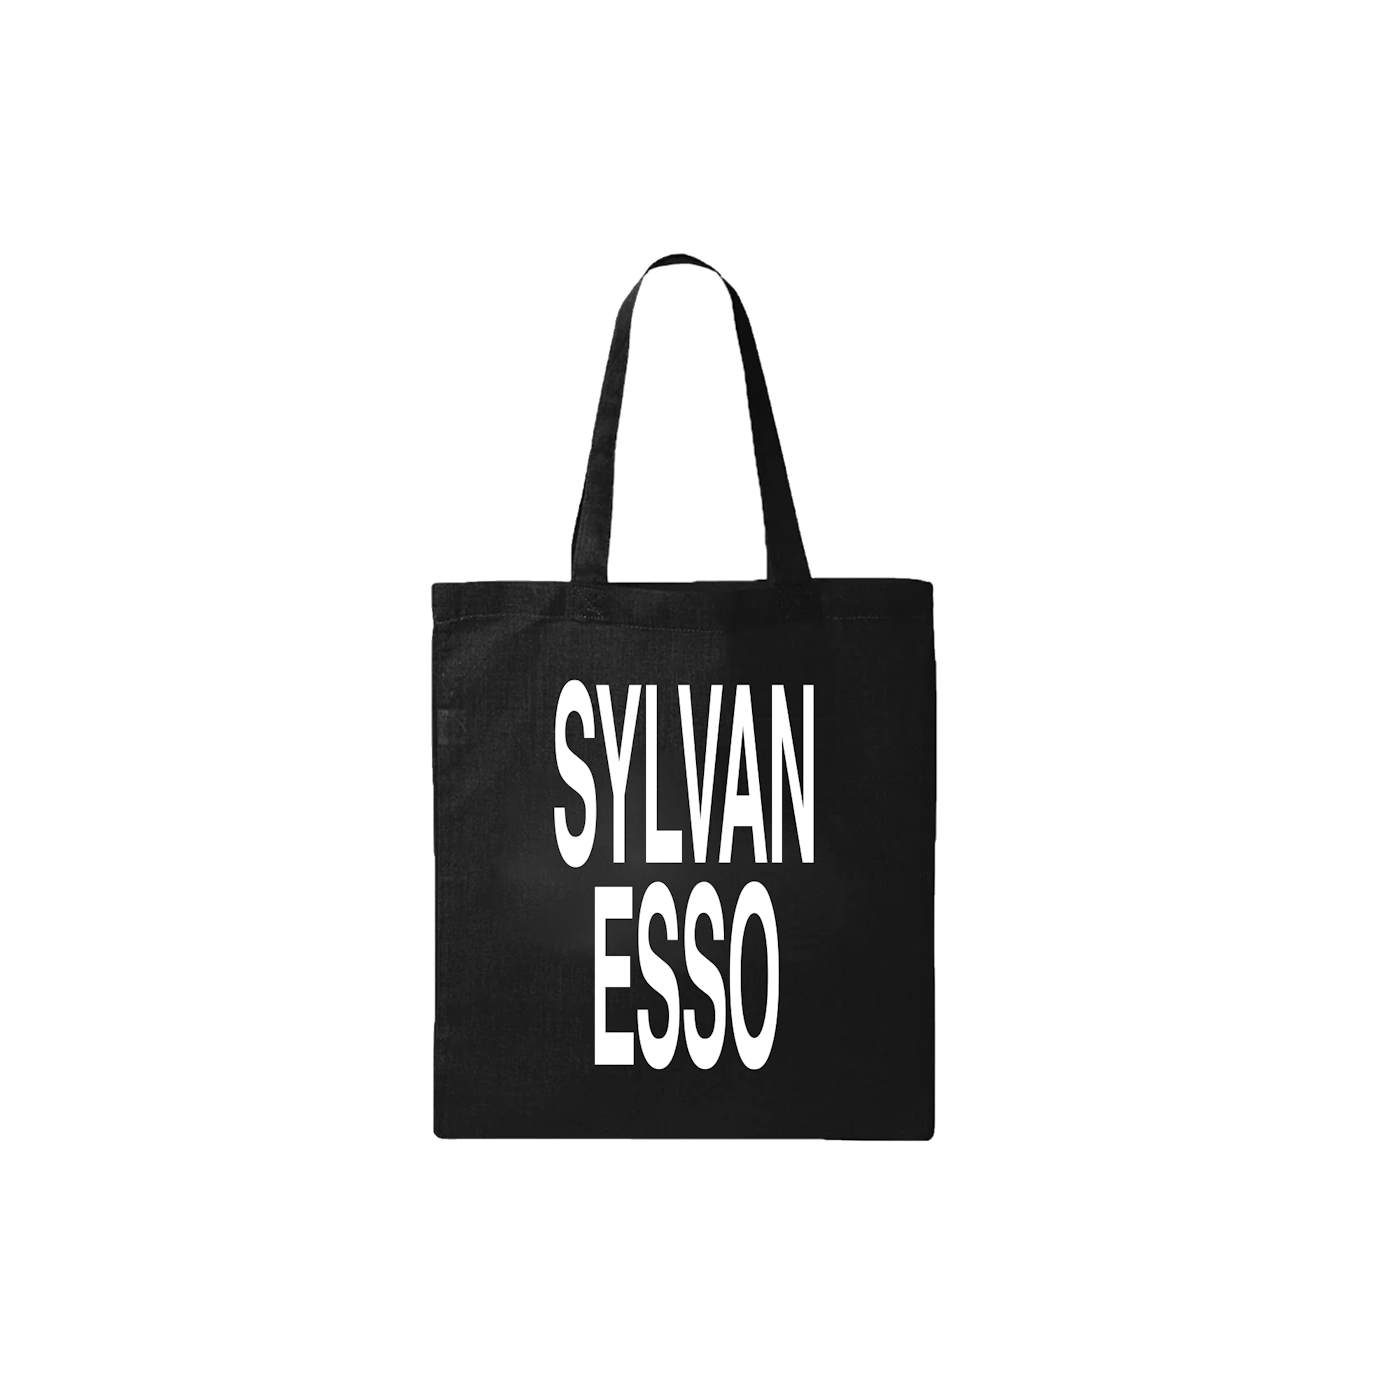 Alvvays Logo Tote Bag